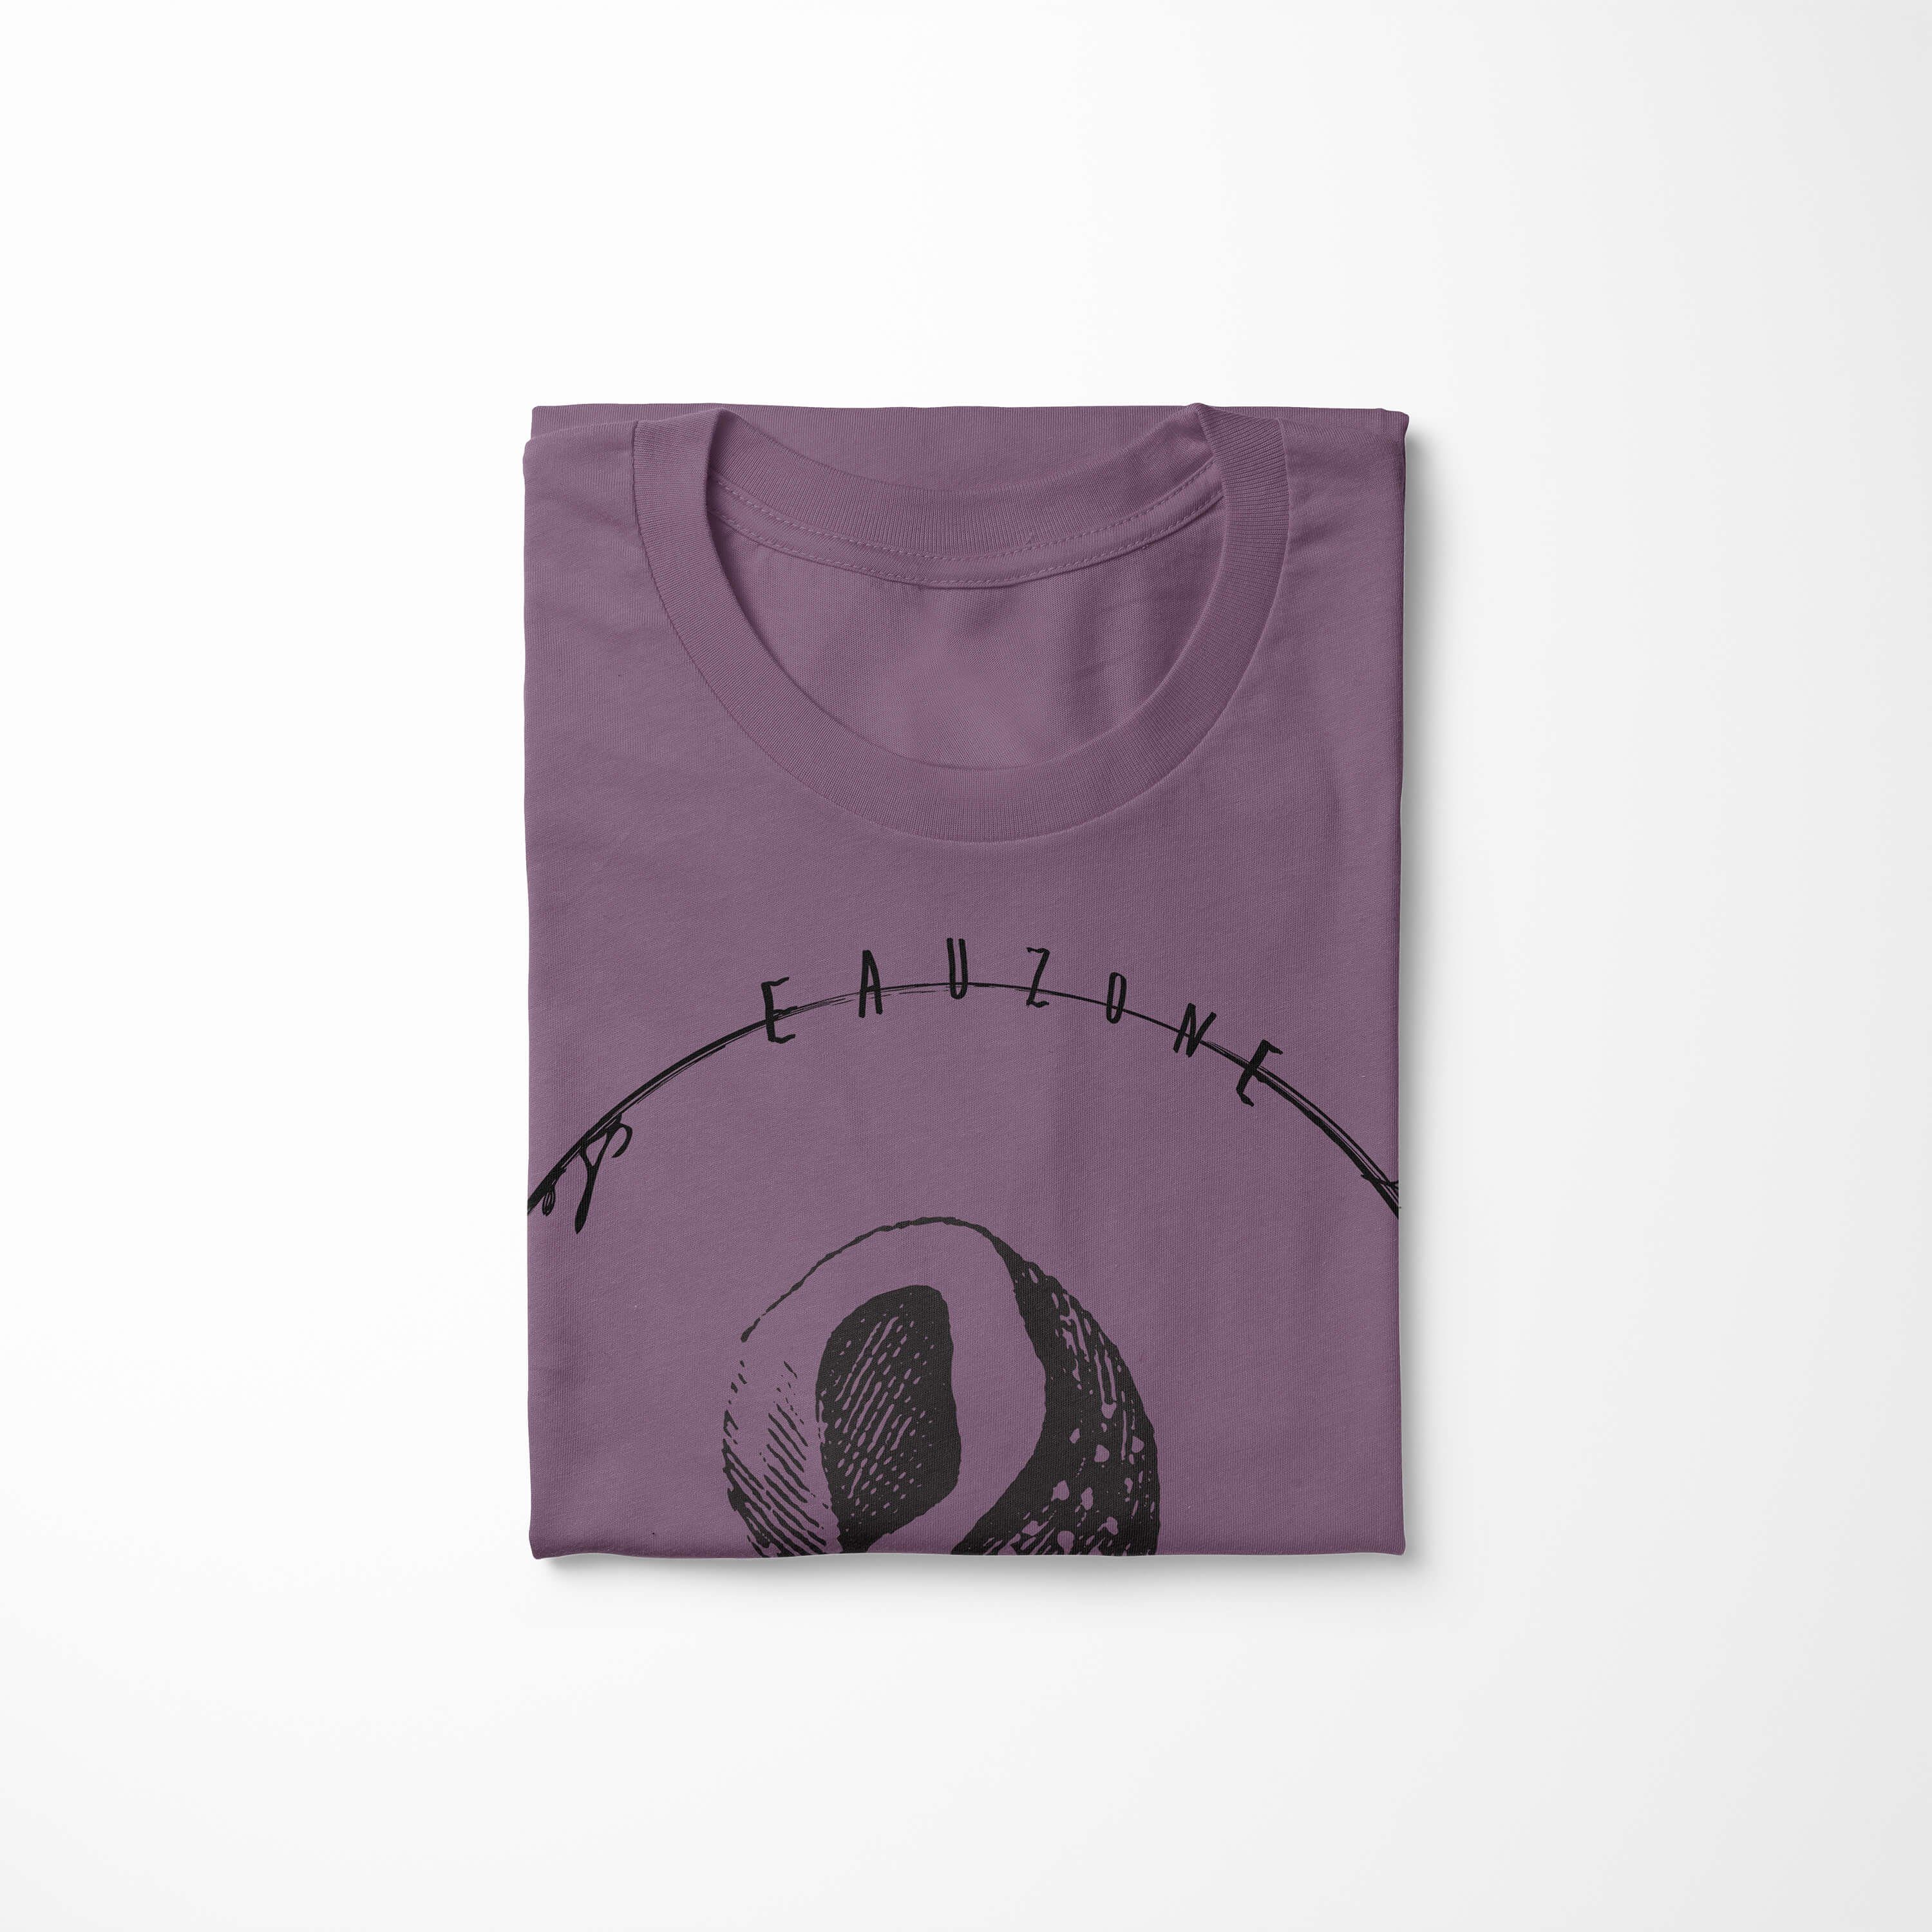 Sea sportlicher T-Shirt - Fische T-Shirt Schnitt / Sea feine Sinus Tiefsee Creatures, Struktur Art Serie: und 006 Shiraz